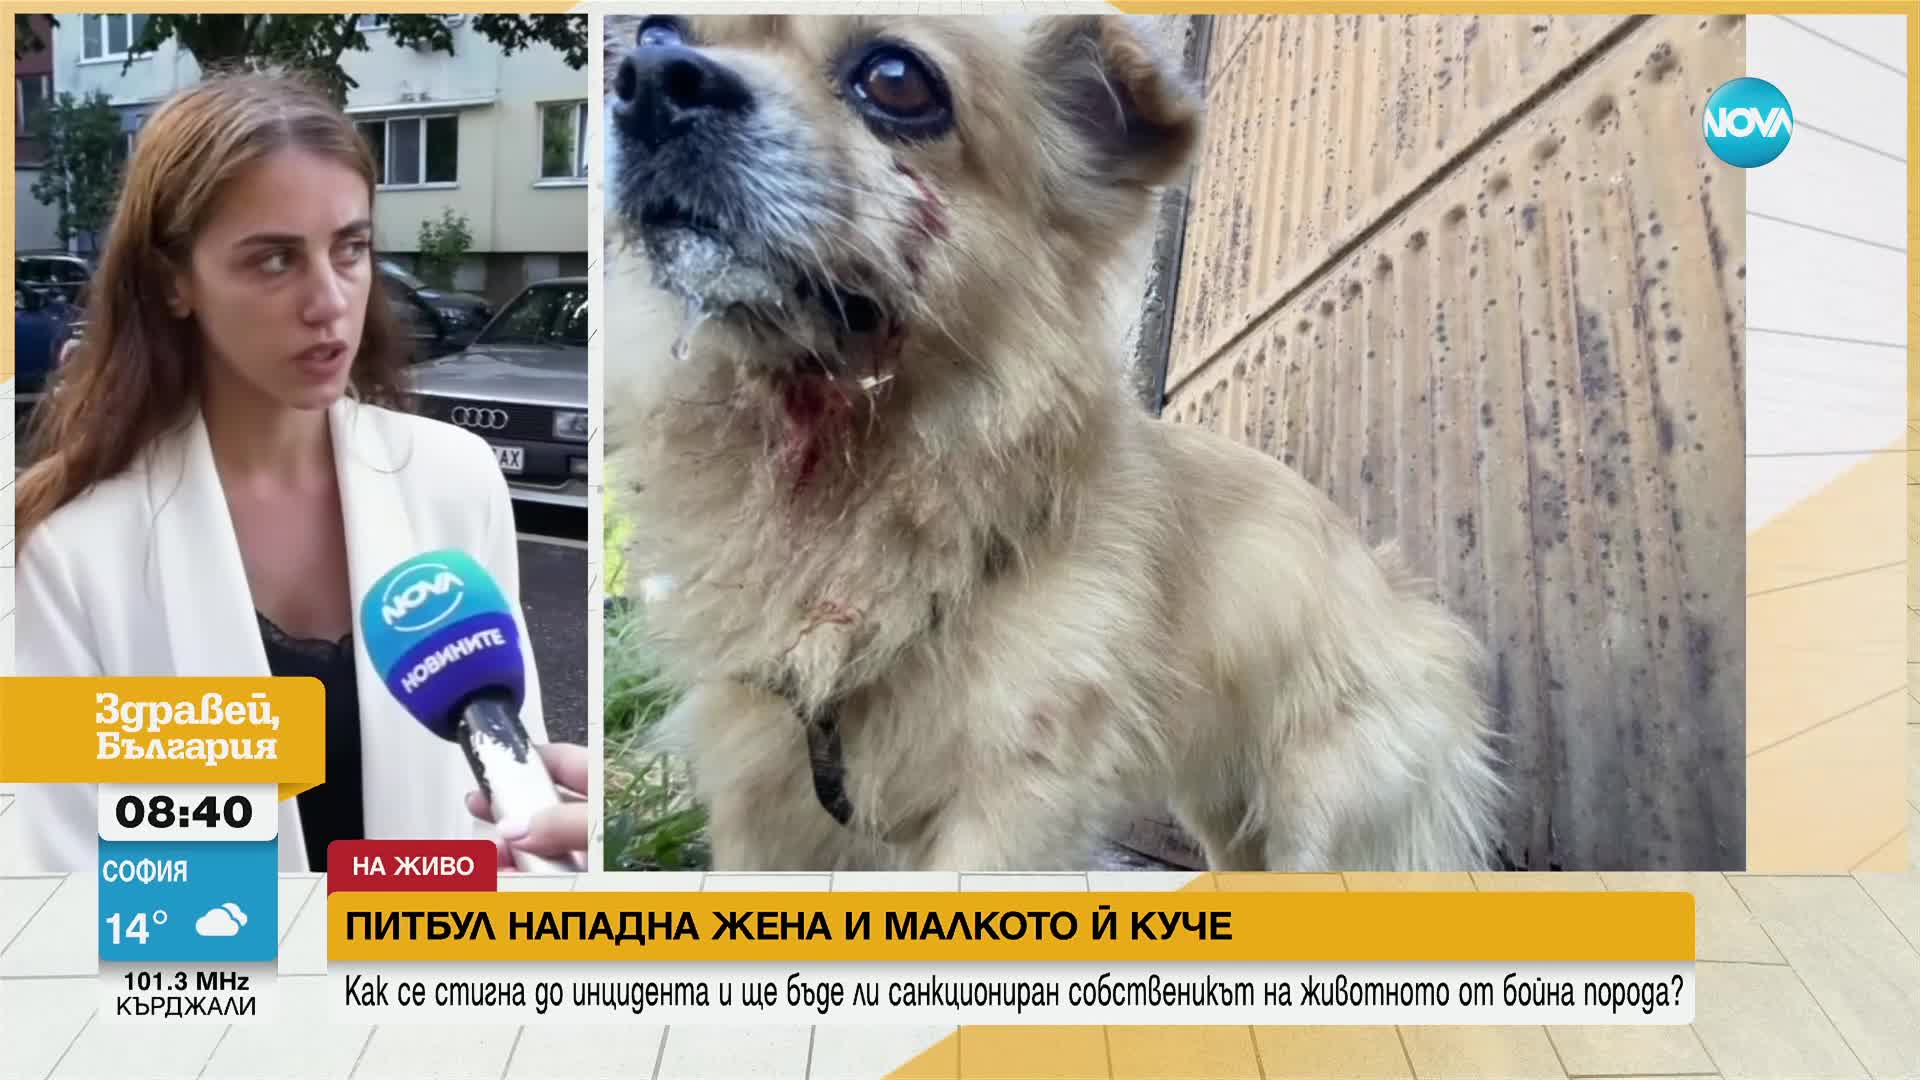 Питбул нападна жена и малкото й куче във Враца